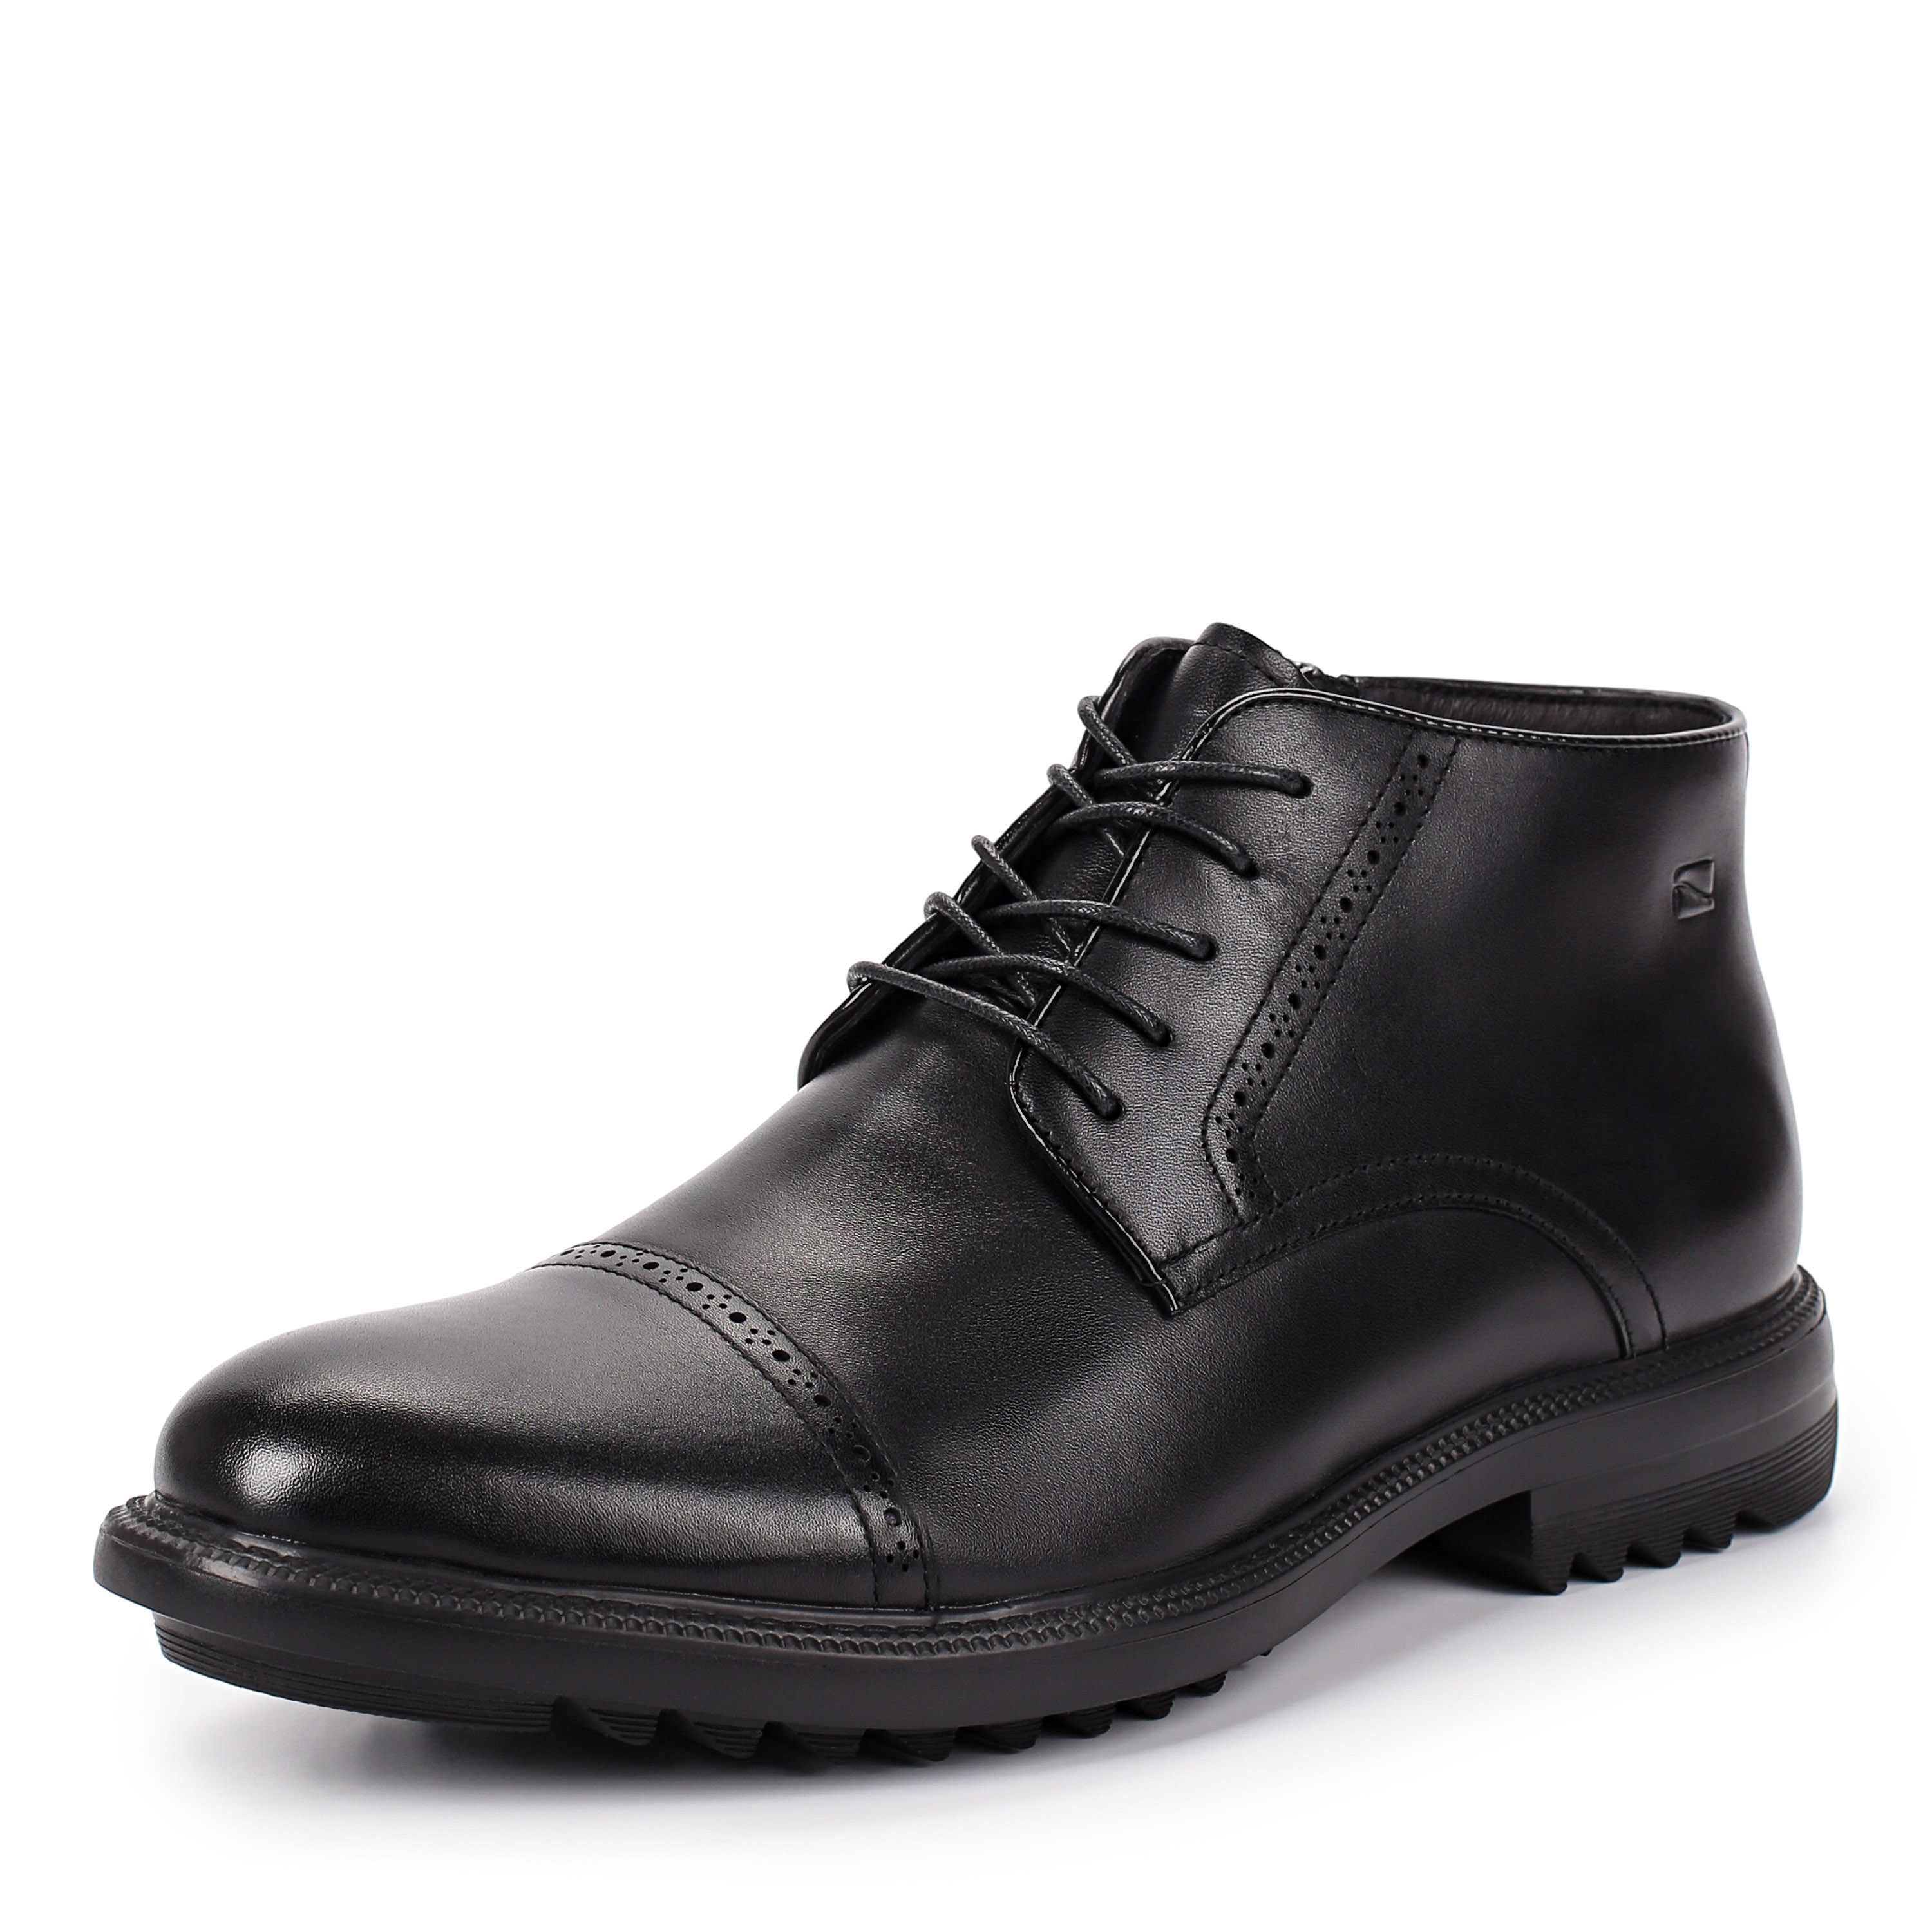 Ботинки Thomas Munz 073-383A-2102 073-383A-2102, цвет черный, размер 44 дерби - фото 2